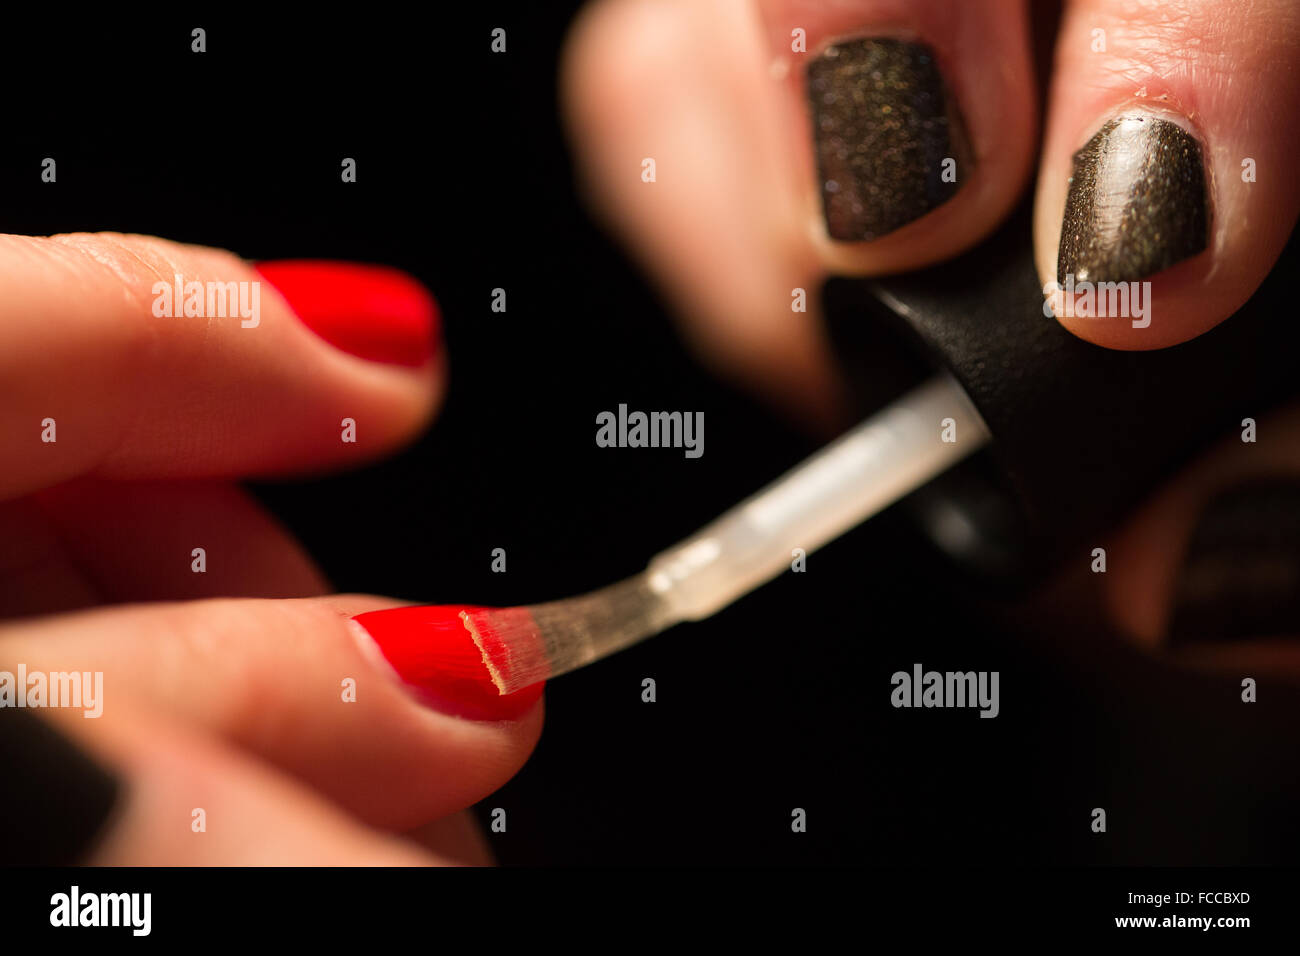 Fingernail polish. Stock Photo